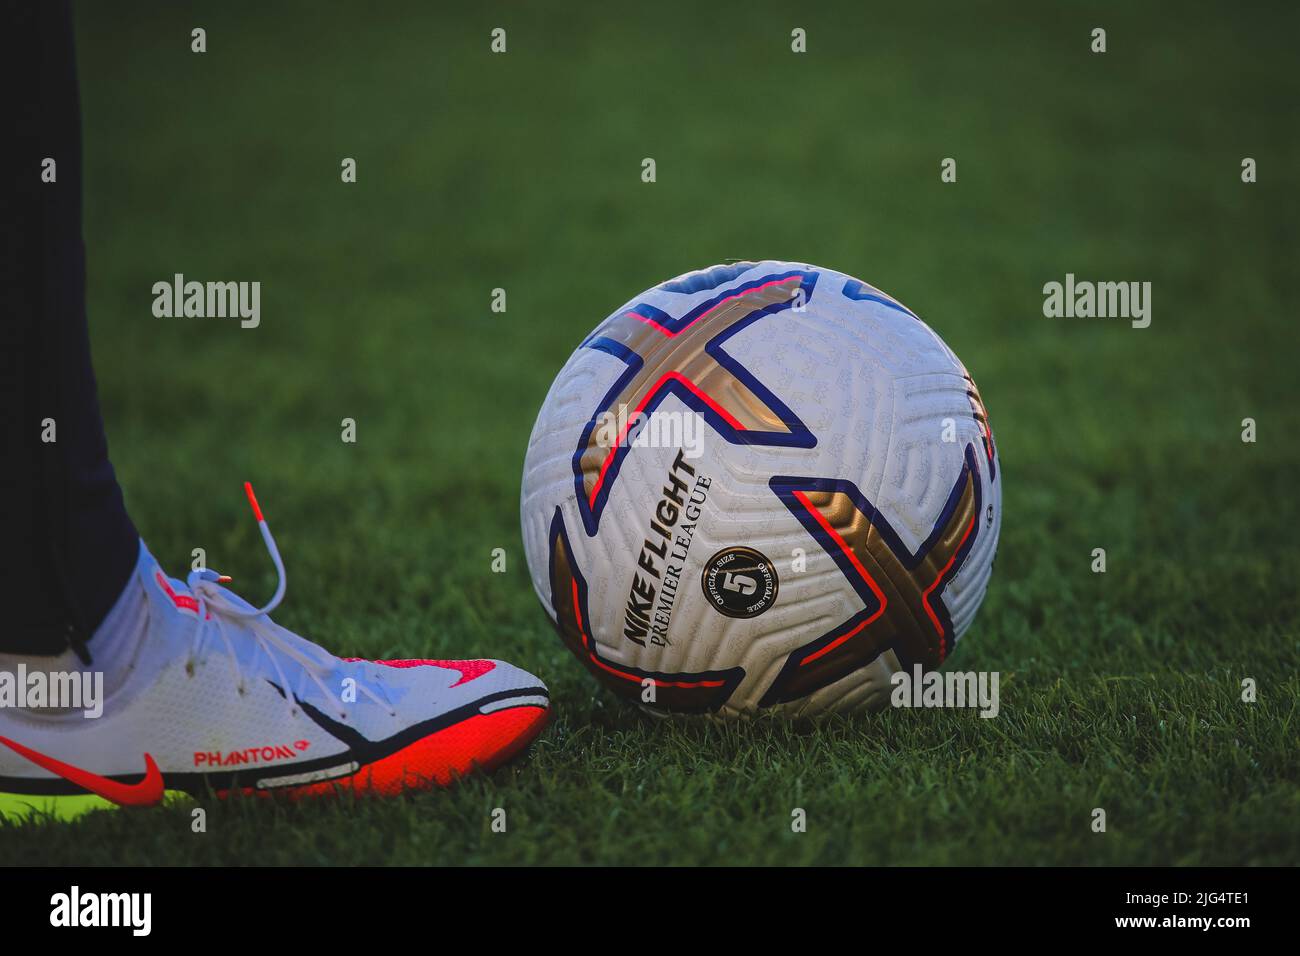 El día oficial del partido de fútbol de la Premier League Nike Flight Foto de stock